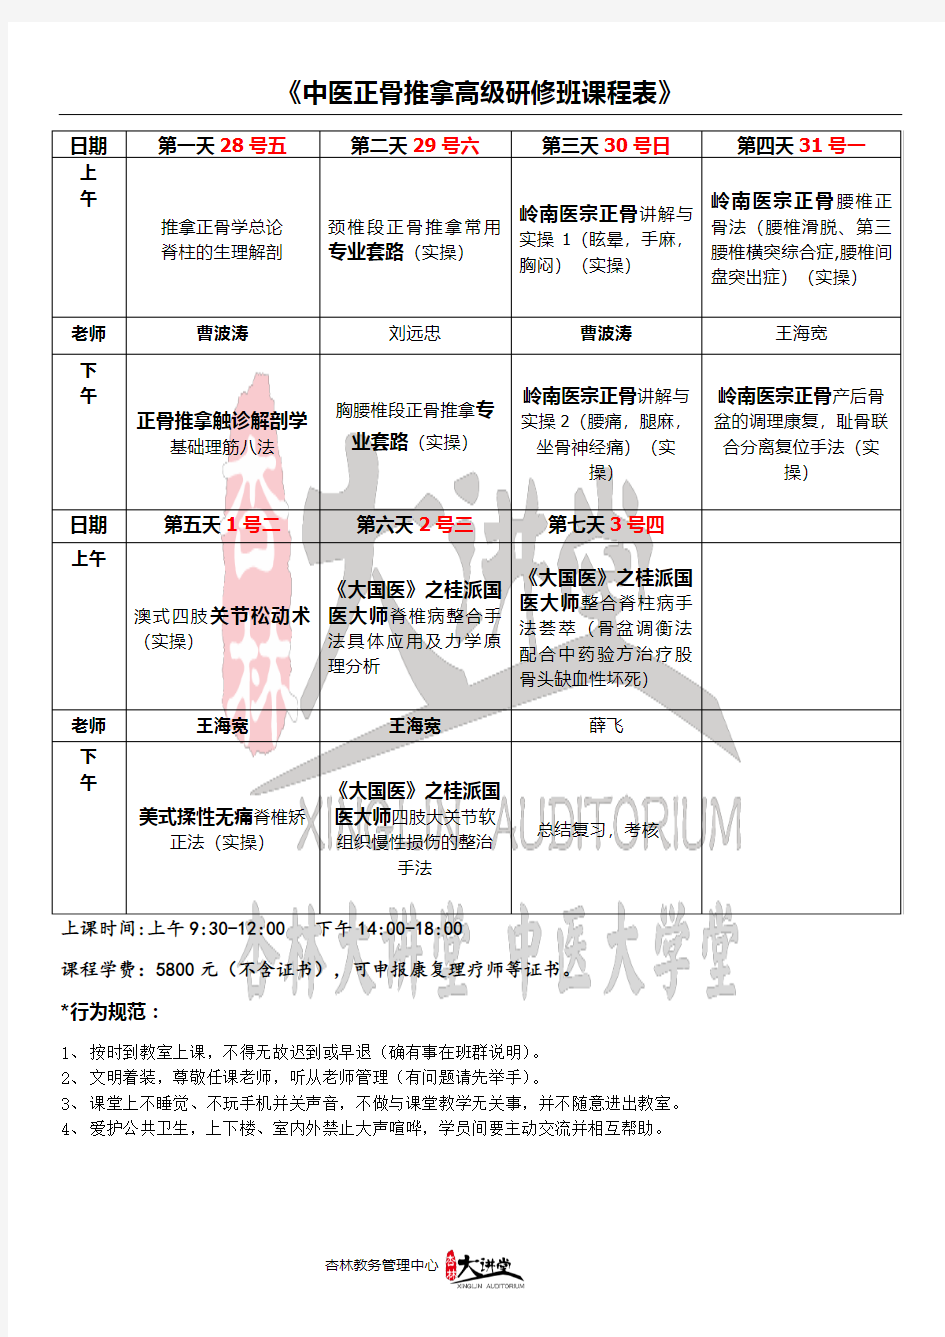 广州杏林大讲堂总校12.28中医正骨推拿班课表(安排表)